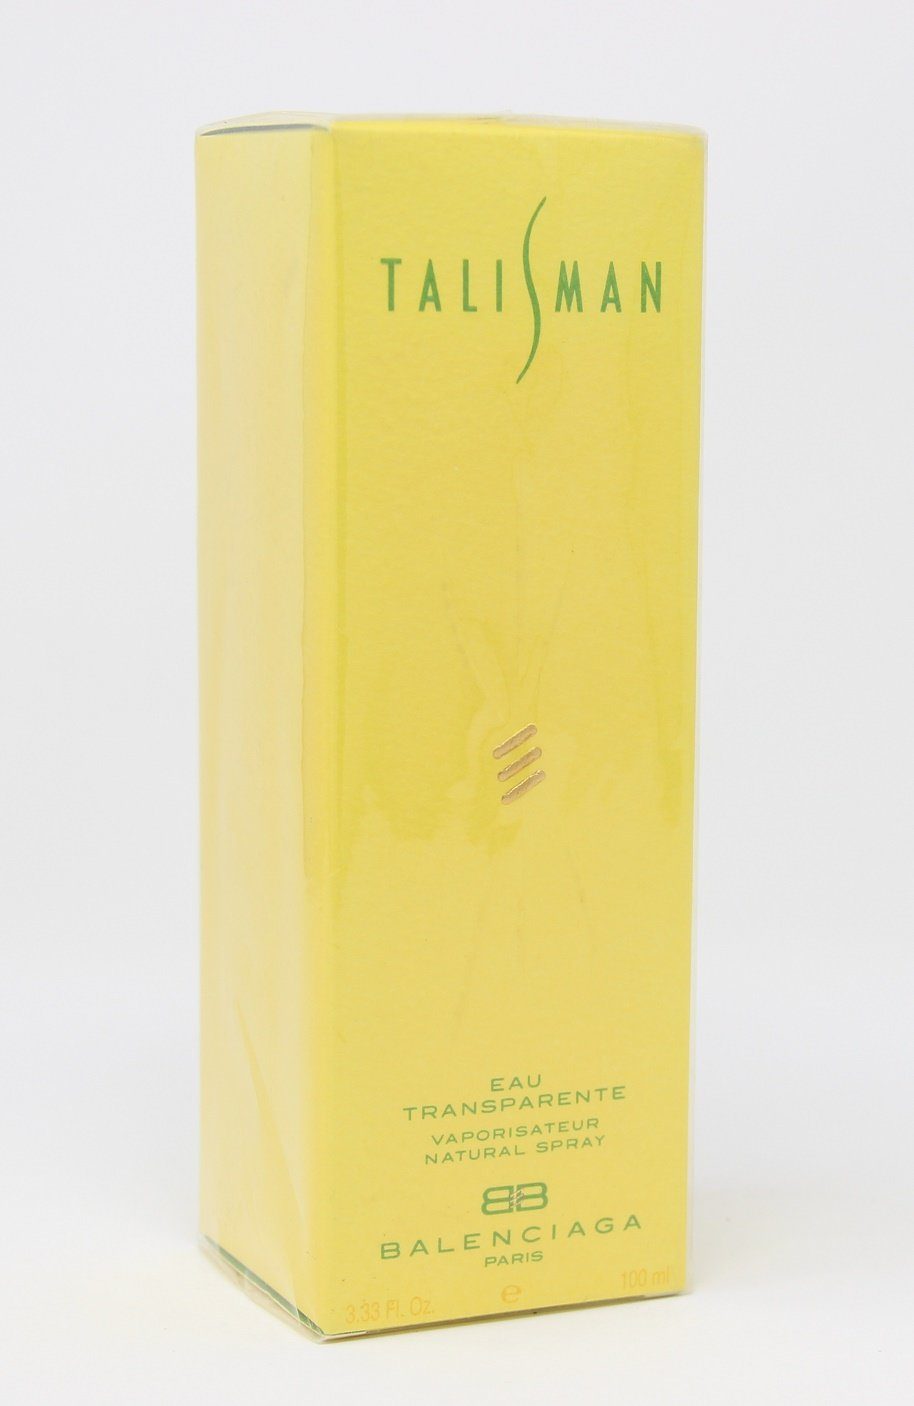 de Eau Natural Balenciaga Transparente Parfum Balenciaga 100ml Talisman Spray Eau